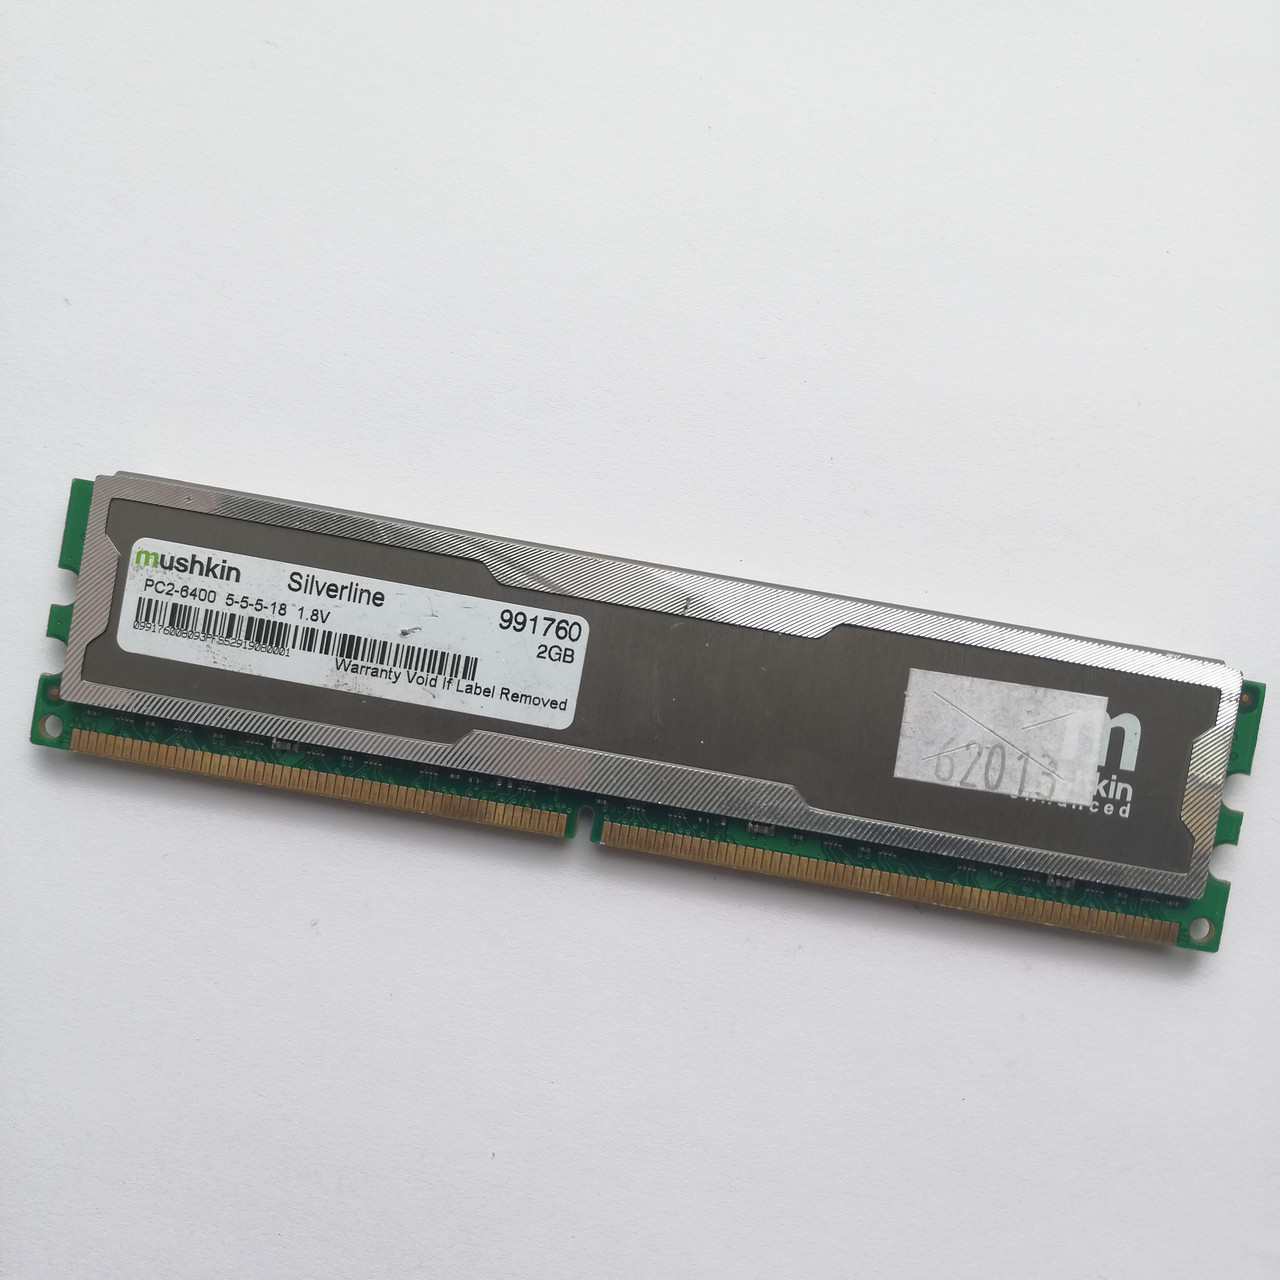 Ігрова оперативна пам'ять Mushkin DDR2 2Gb 800MHz PC2 6400U CL5 (991760) Б/В